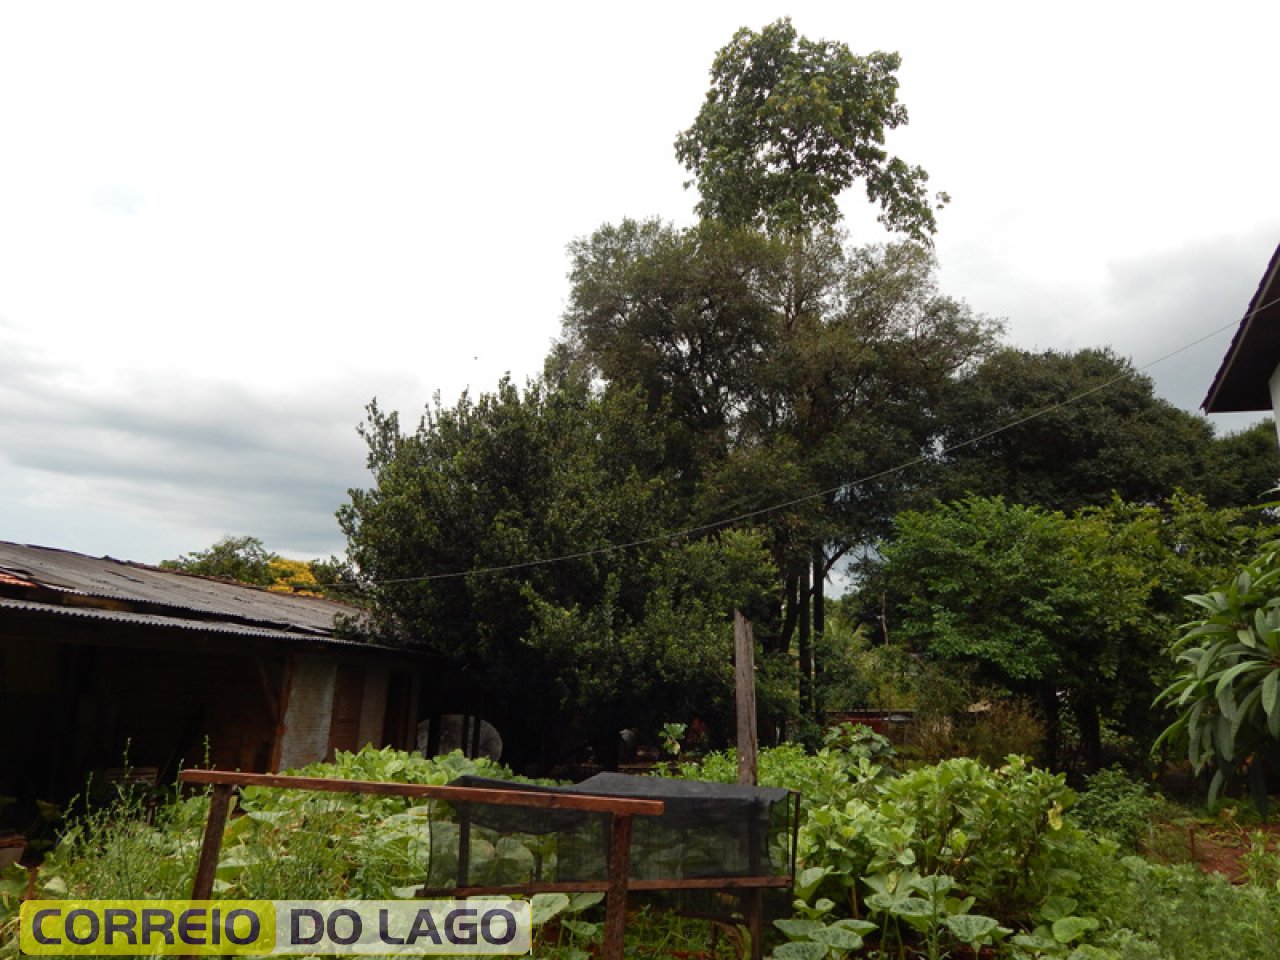 Melhor visualização da Castanheira. Árvore nativa da região Amazônica Brasileira. Parece que adaptou perfeitamente ao nosso clima, solo e relevo.